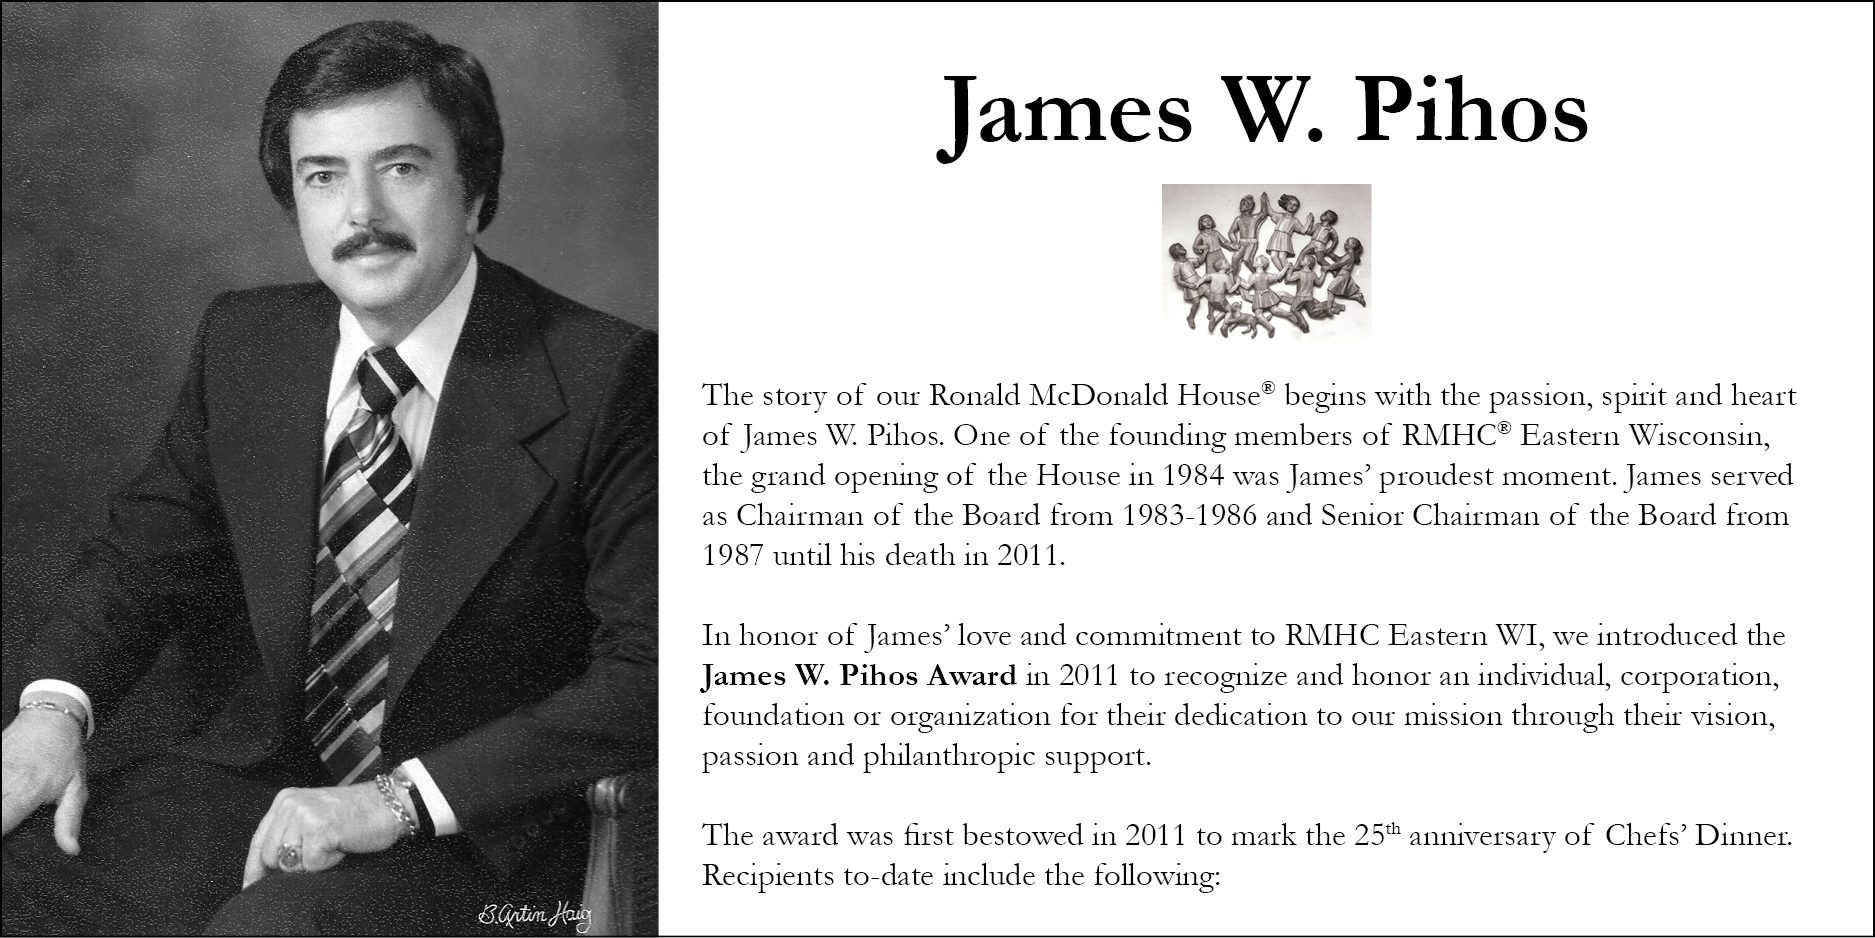 James W. Pihos Award